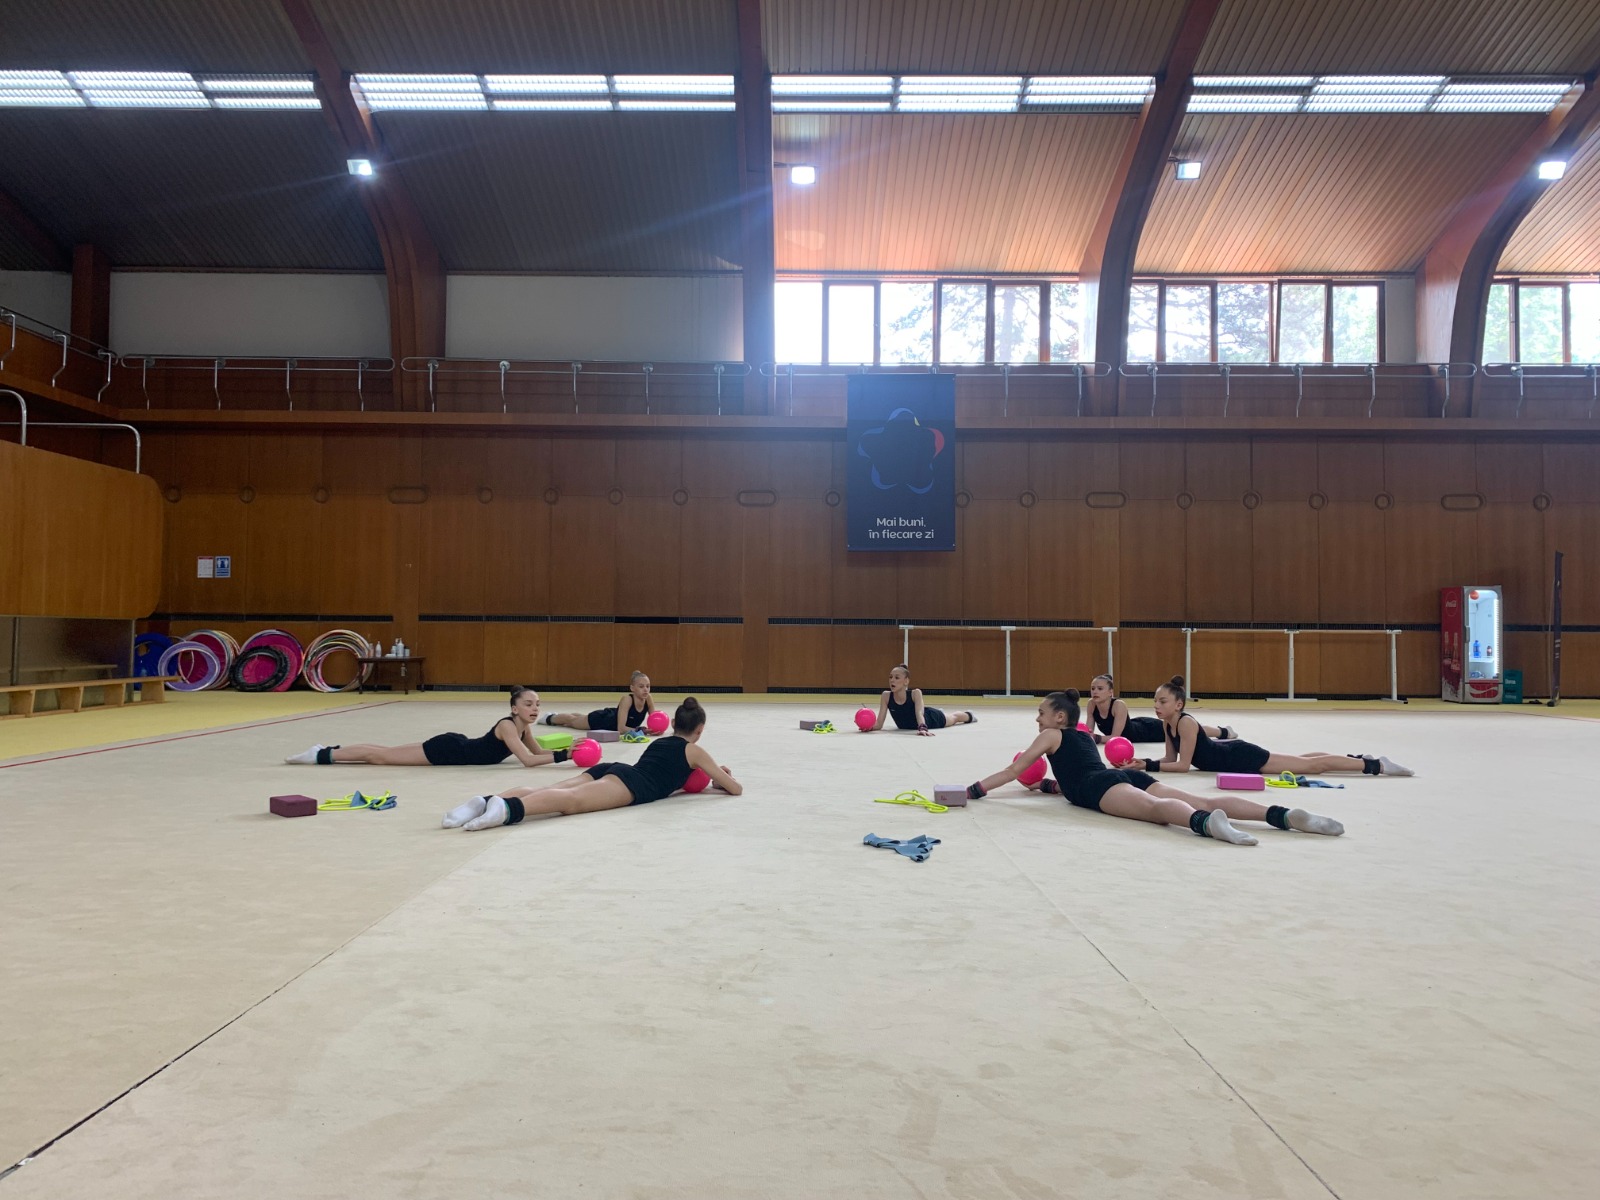  Campionatul Mondial de gimnastică ritmică se desfășoară la Cluj